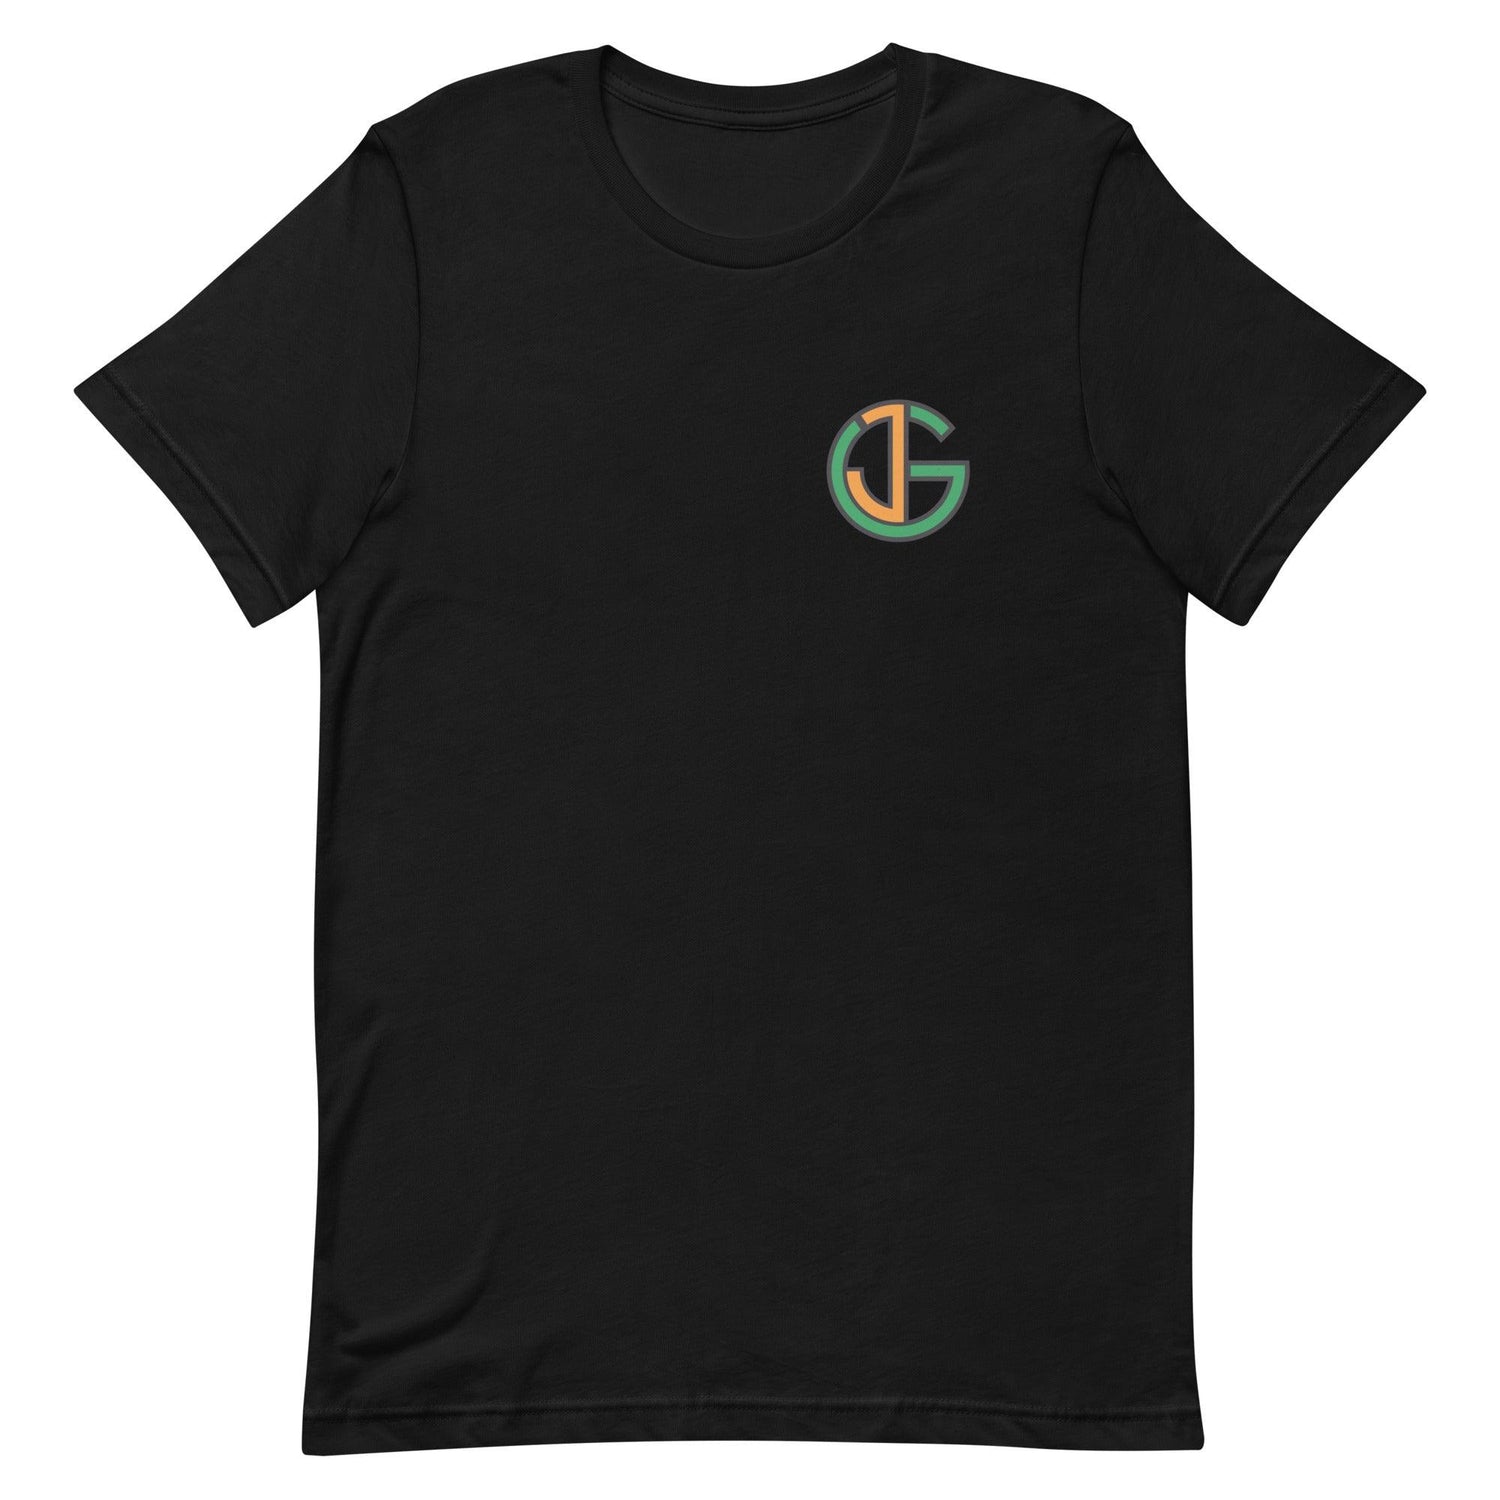 Jalen Glaze "Essential" t-shirt - Fan Arch